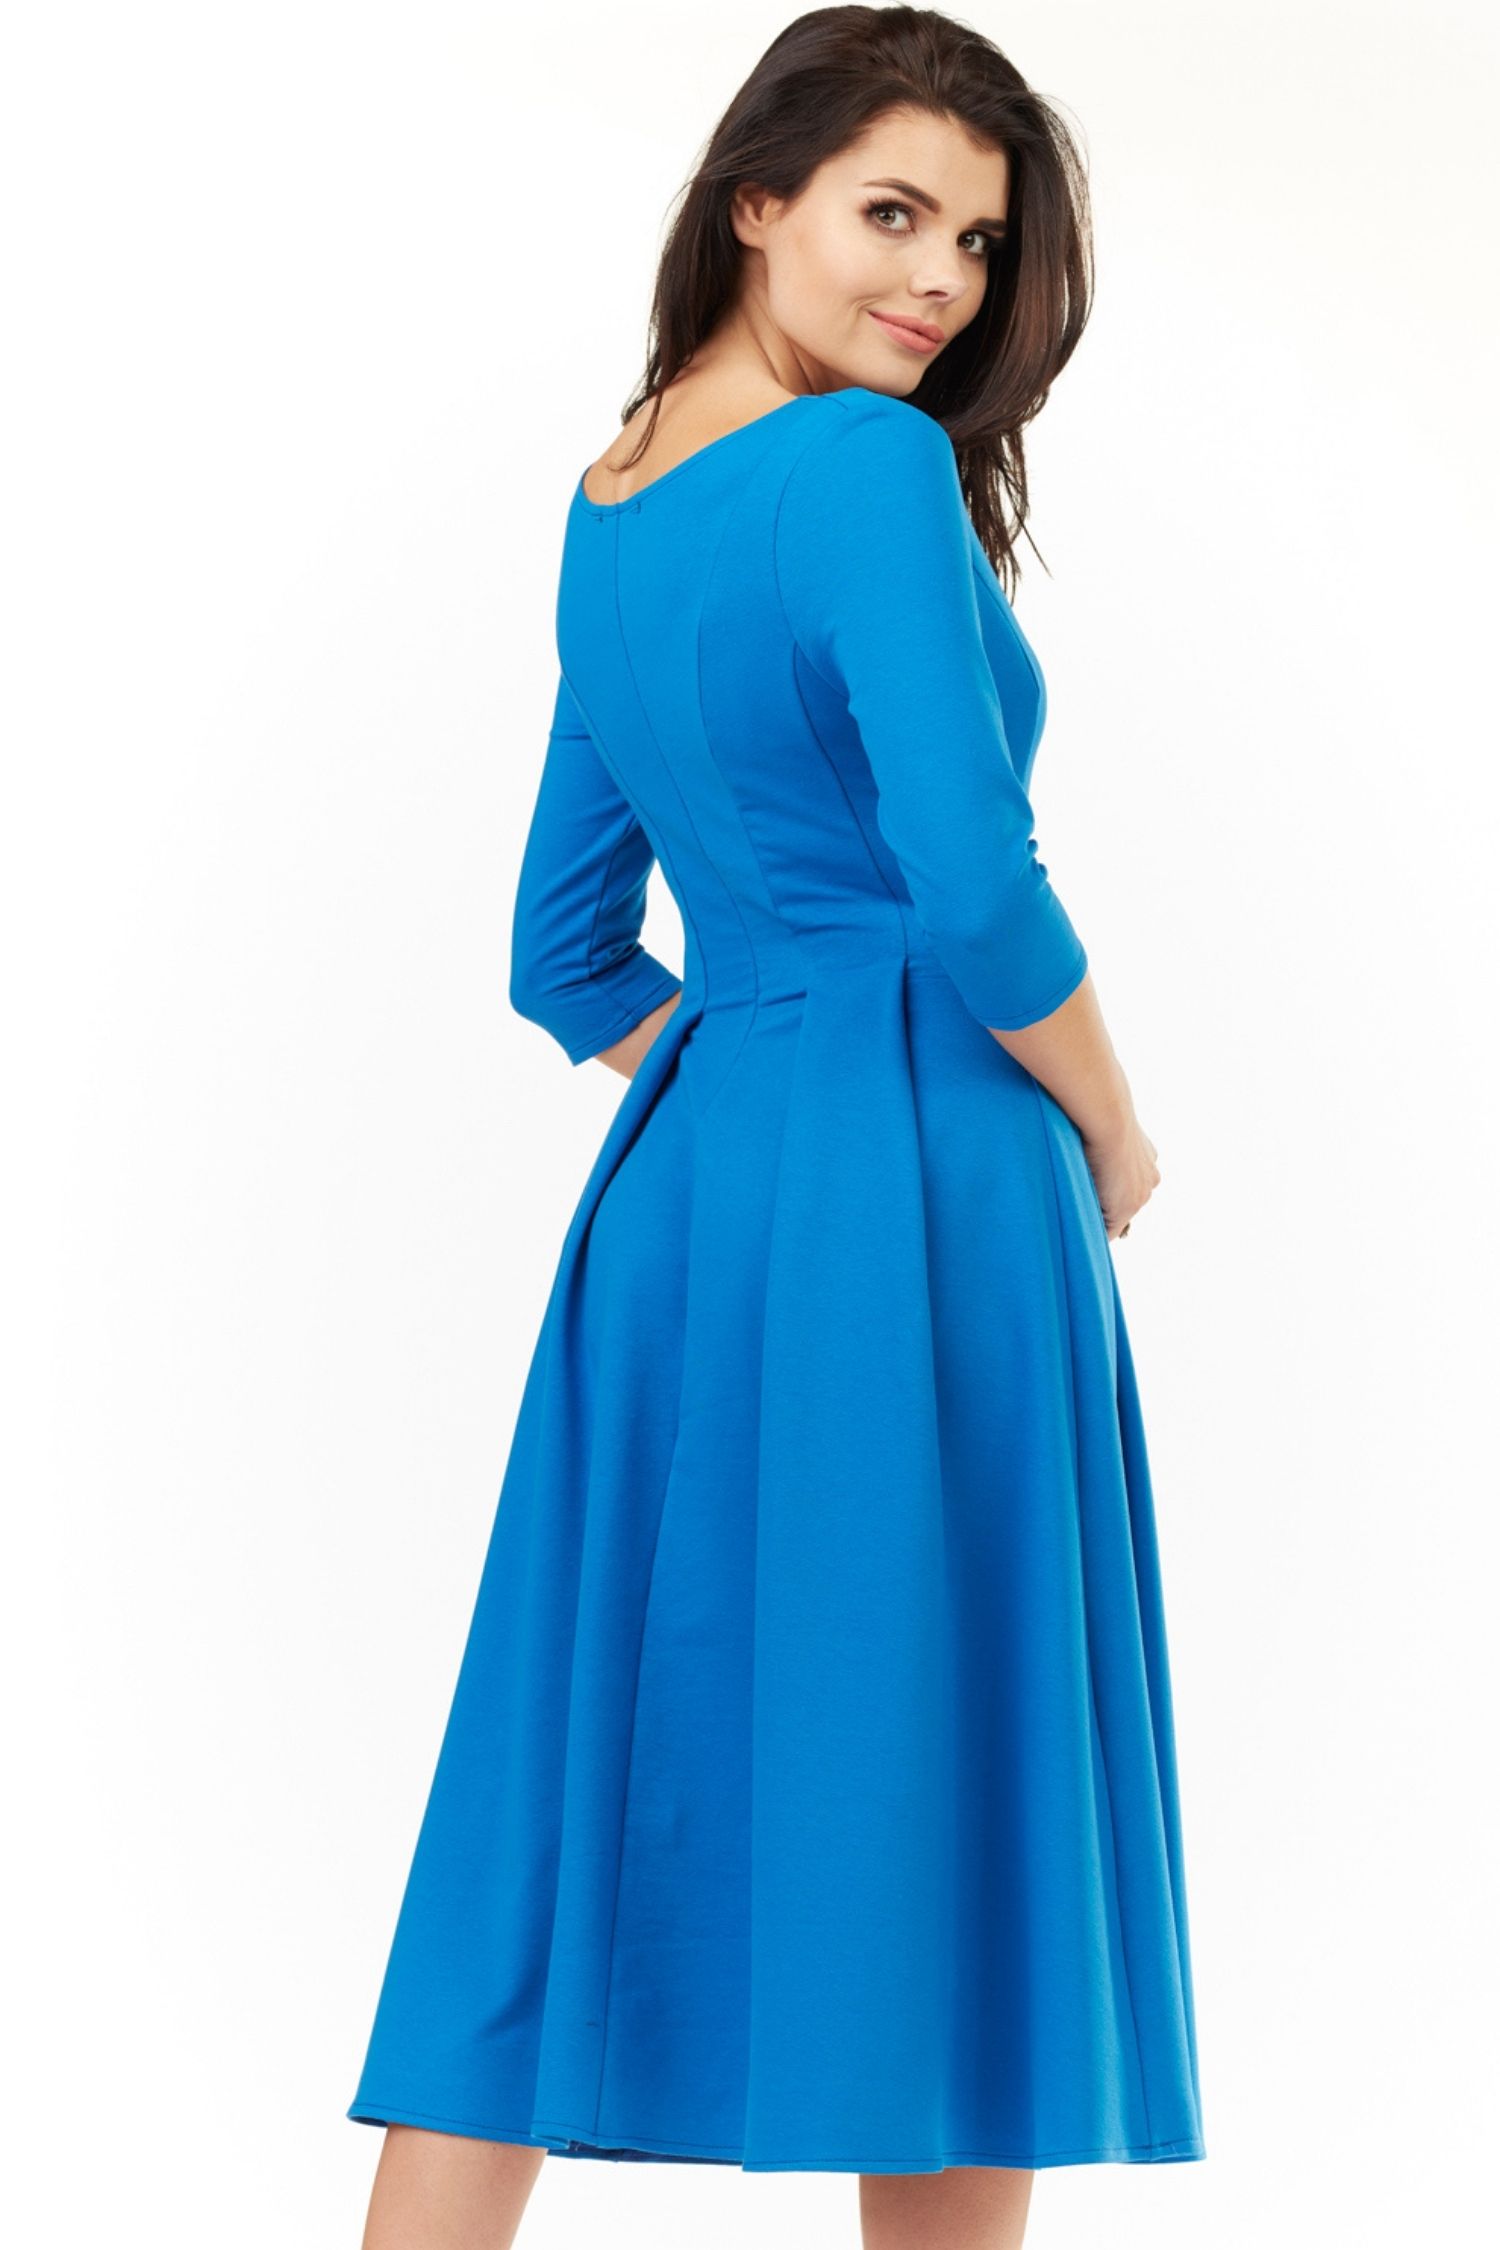 Opis: Bawełniana sukienka rozkloszowana midi z rękawem 3/4 niebieska.